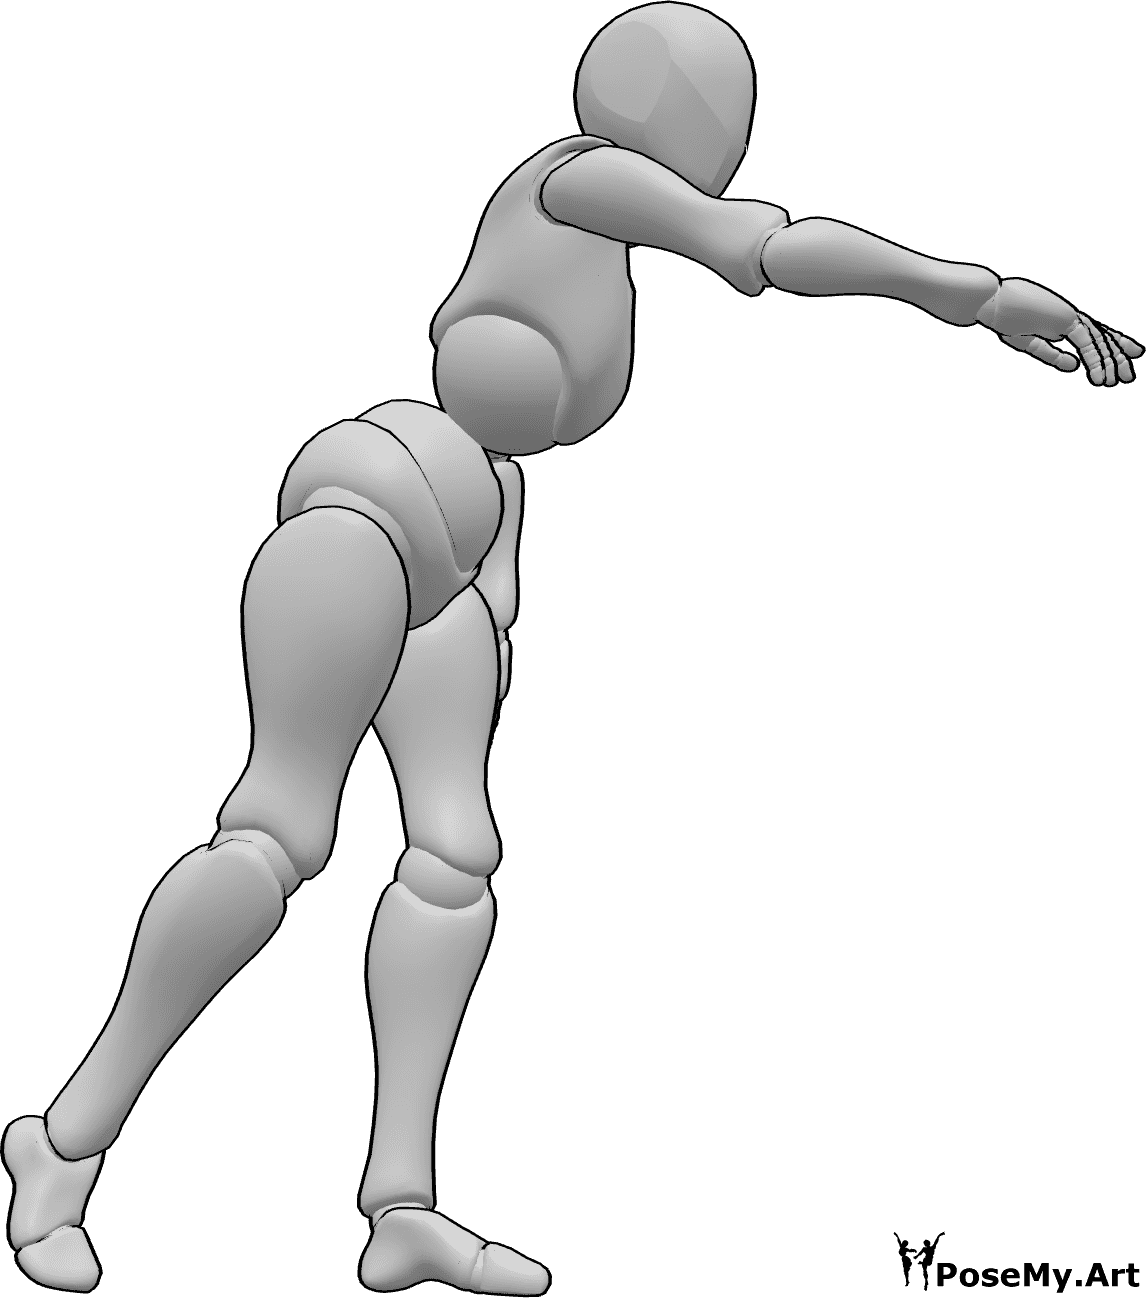 Referência de poses- Pose à altura da cintura - A mulher está a alcançar algo à altura da cintura, inclina-se para a frente e estende a mão direita